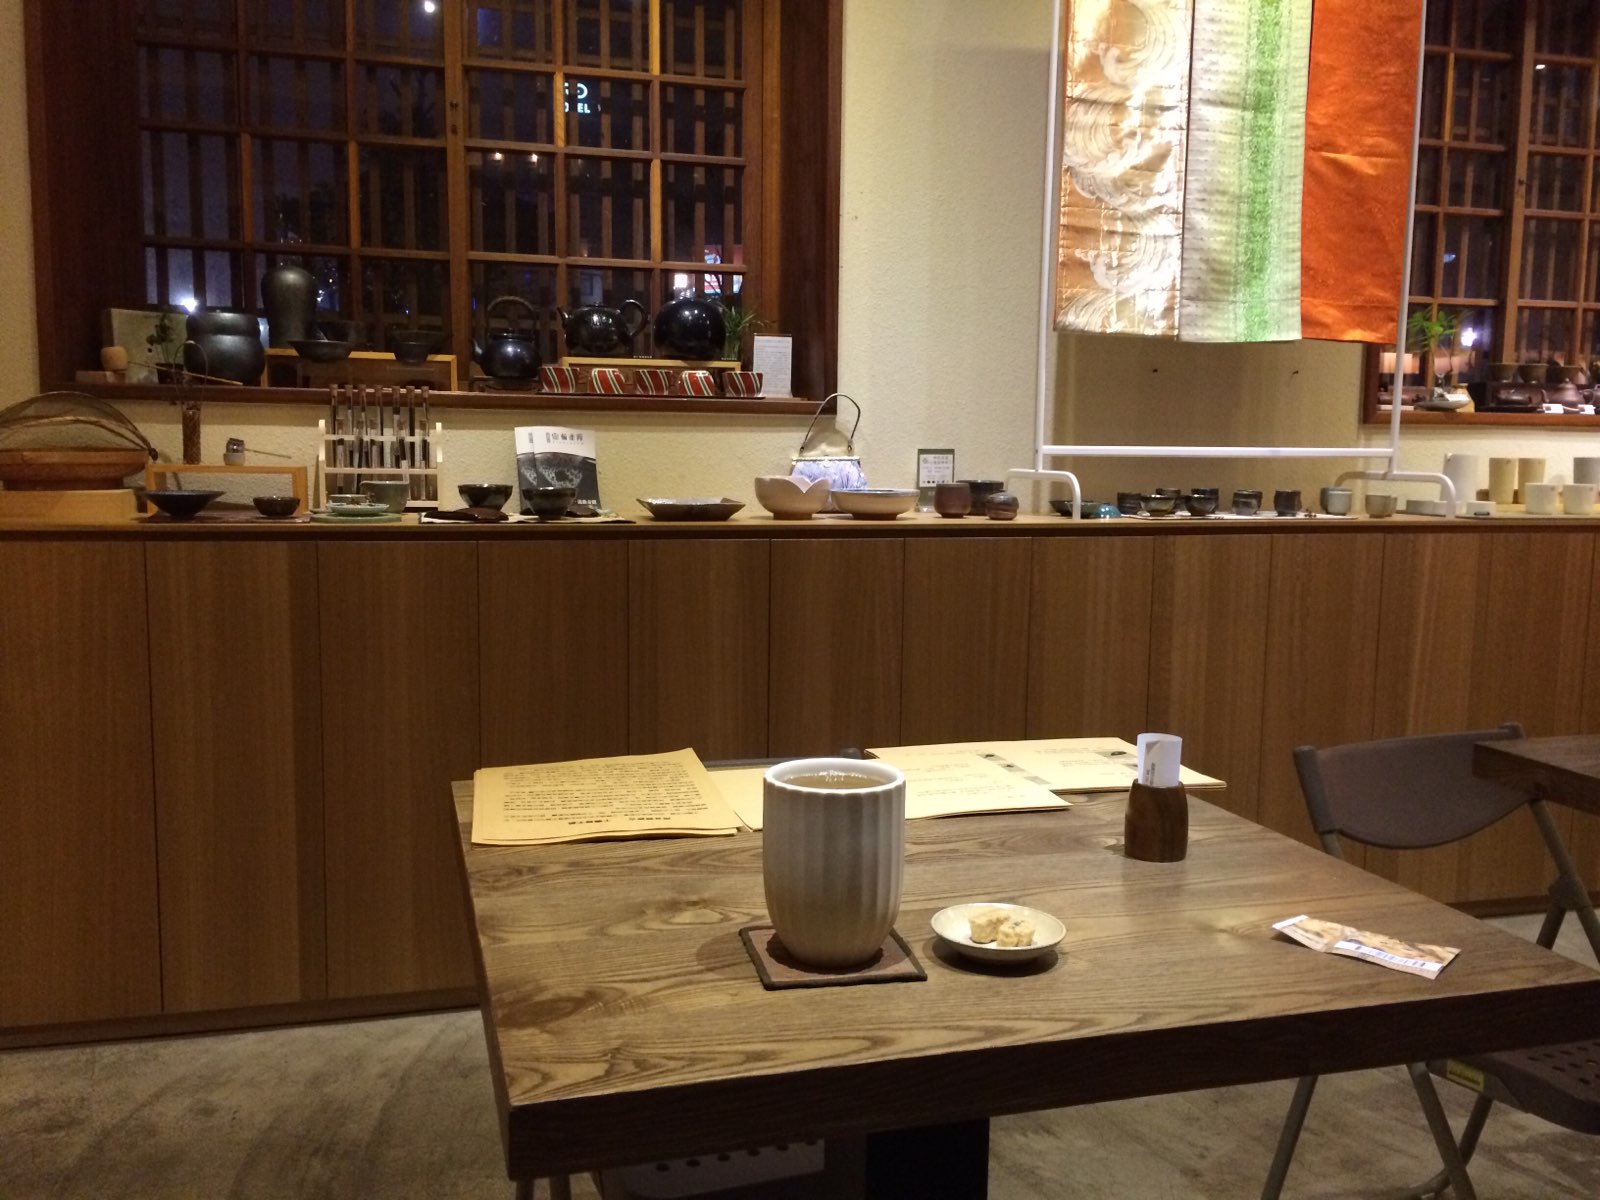 台湾茶的精品小店，造访时巧遇南音表演，古韵配合茶香，在雨夜里别有一番意